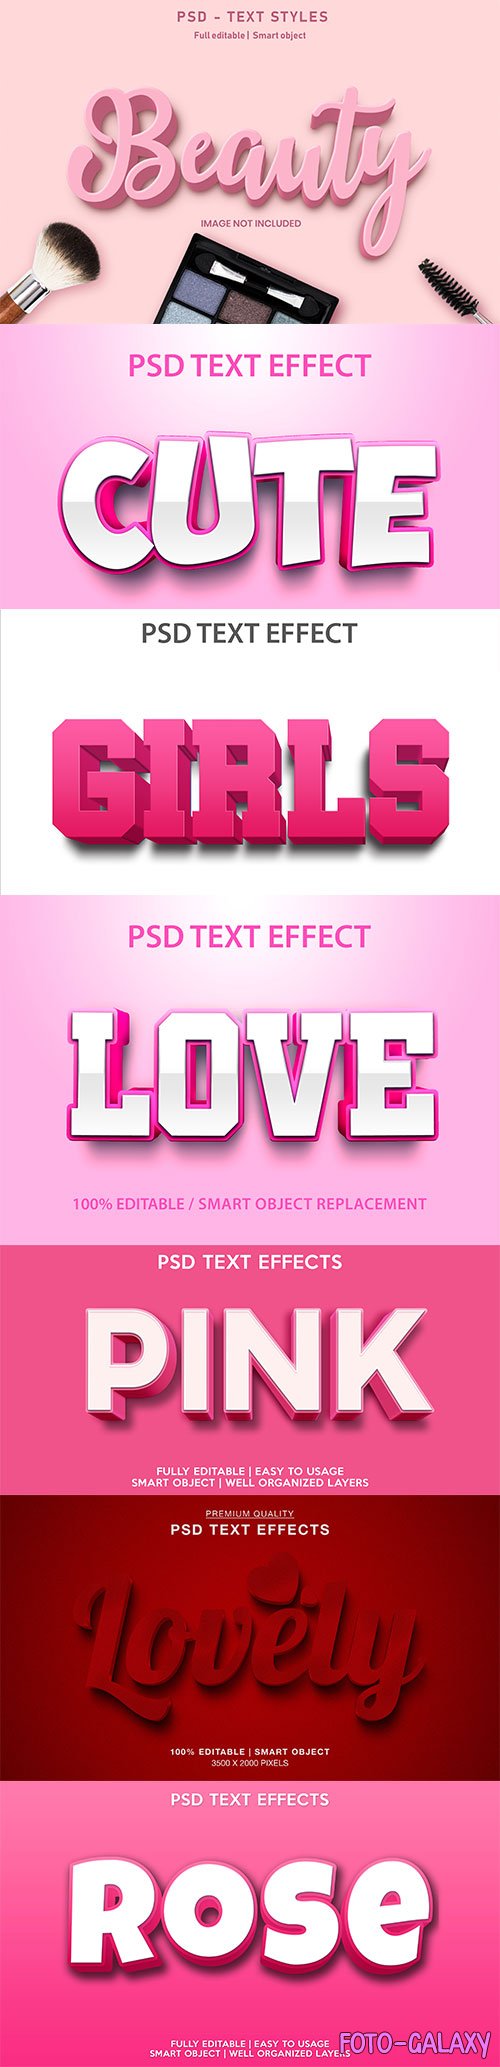 Psd text effect set vol 26